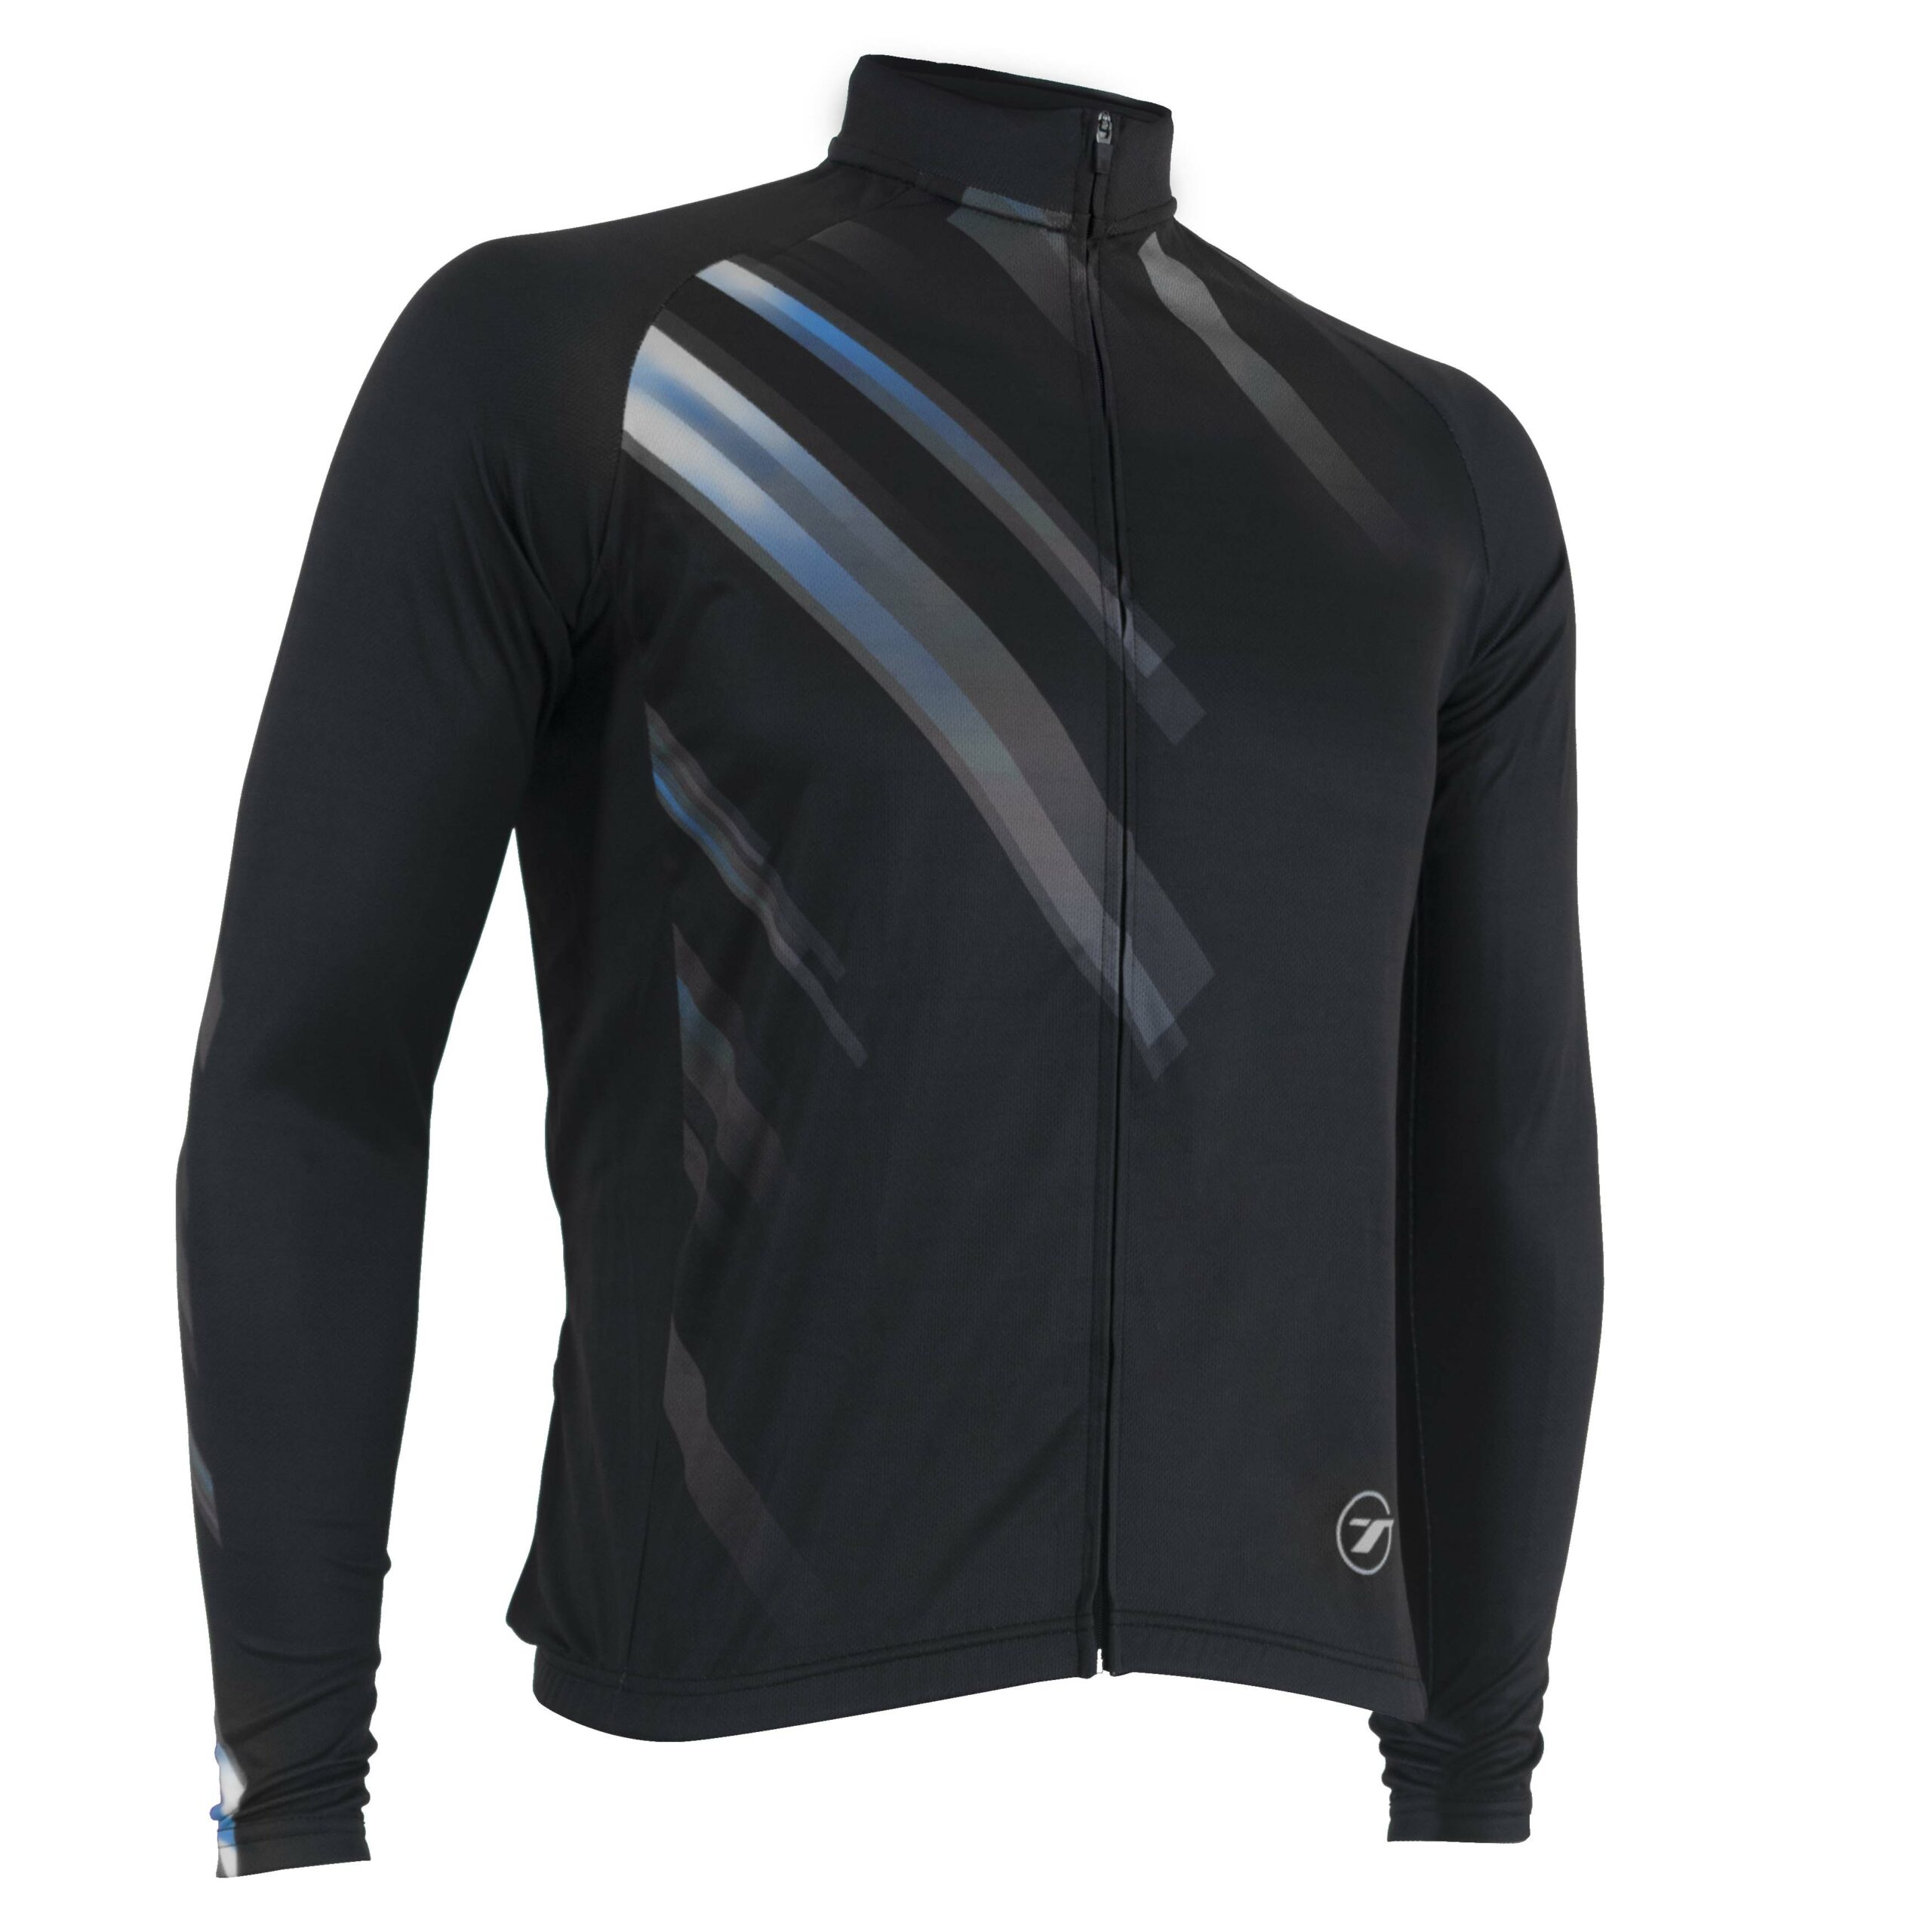 Camisa manga longa para ciclismo SUNNY | RIDE LINE - Preto/Cinza, G